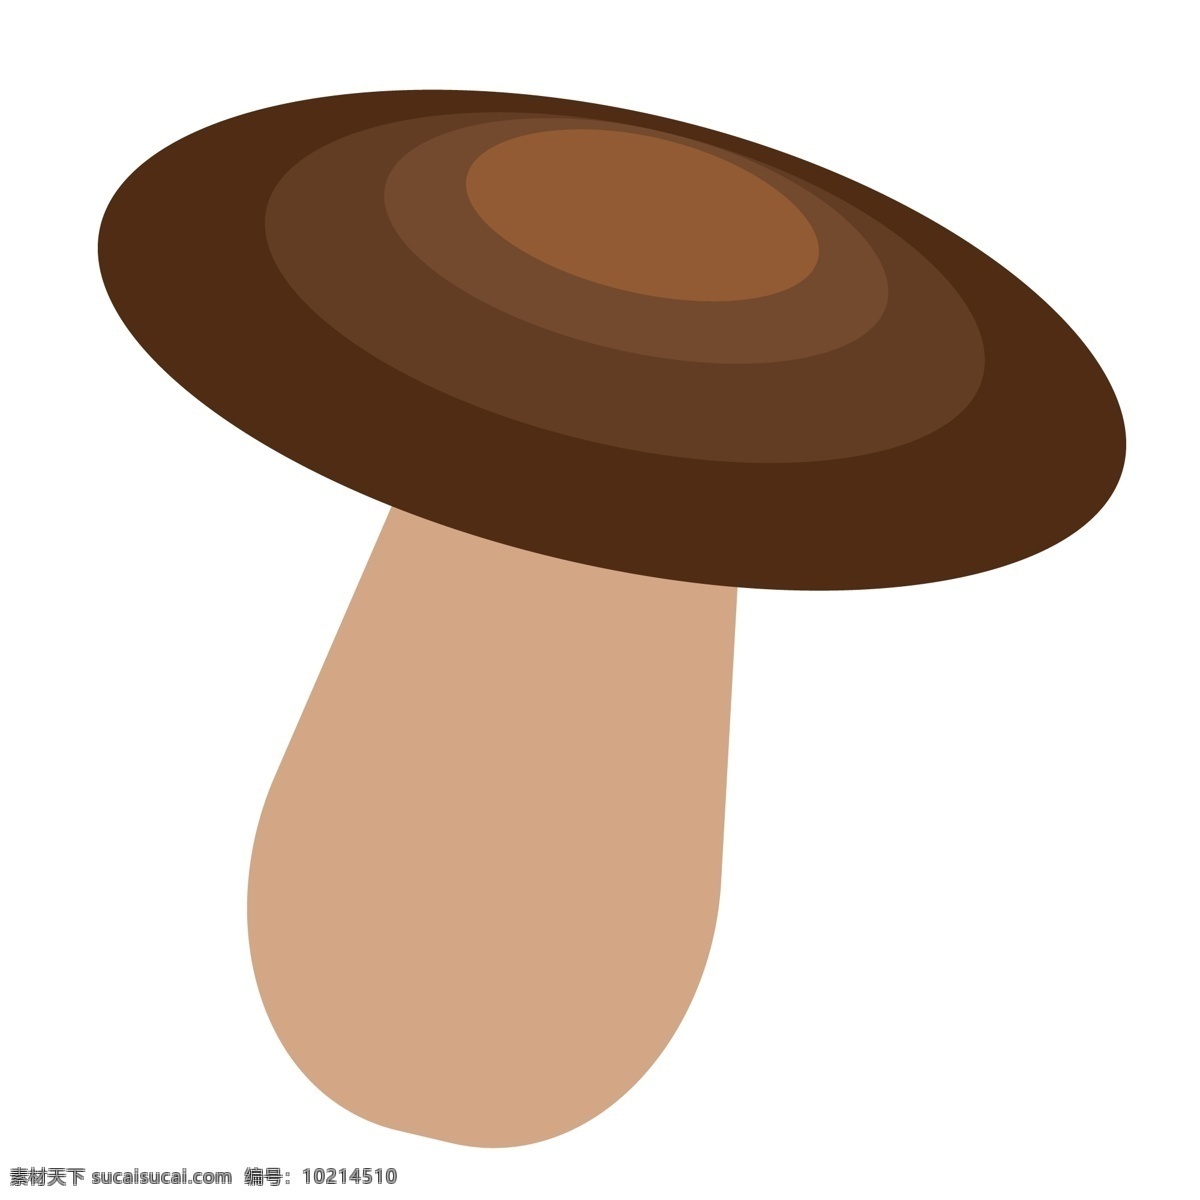 营养 美食 蘑菇 菌类 食物 卡通食物 蘑菇食物 营养蘑菇